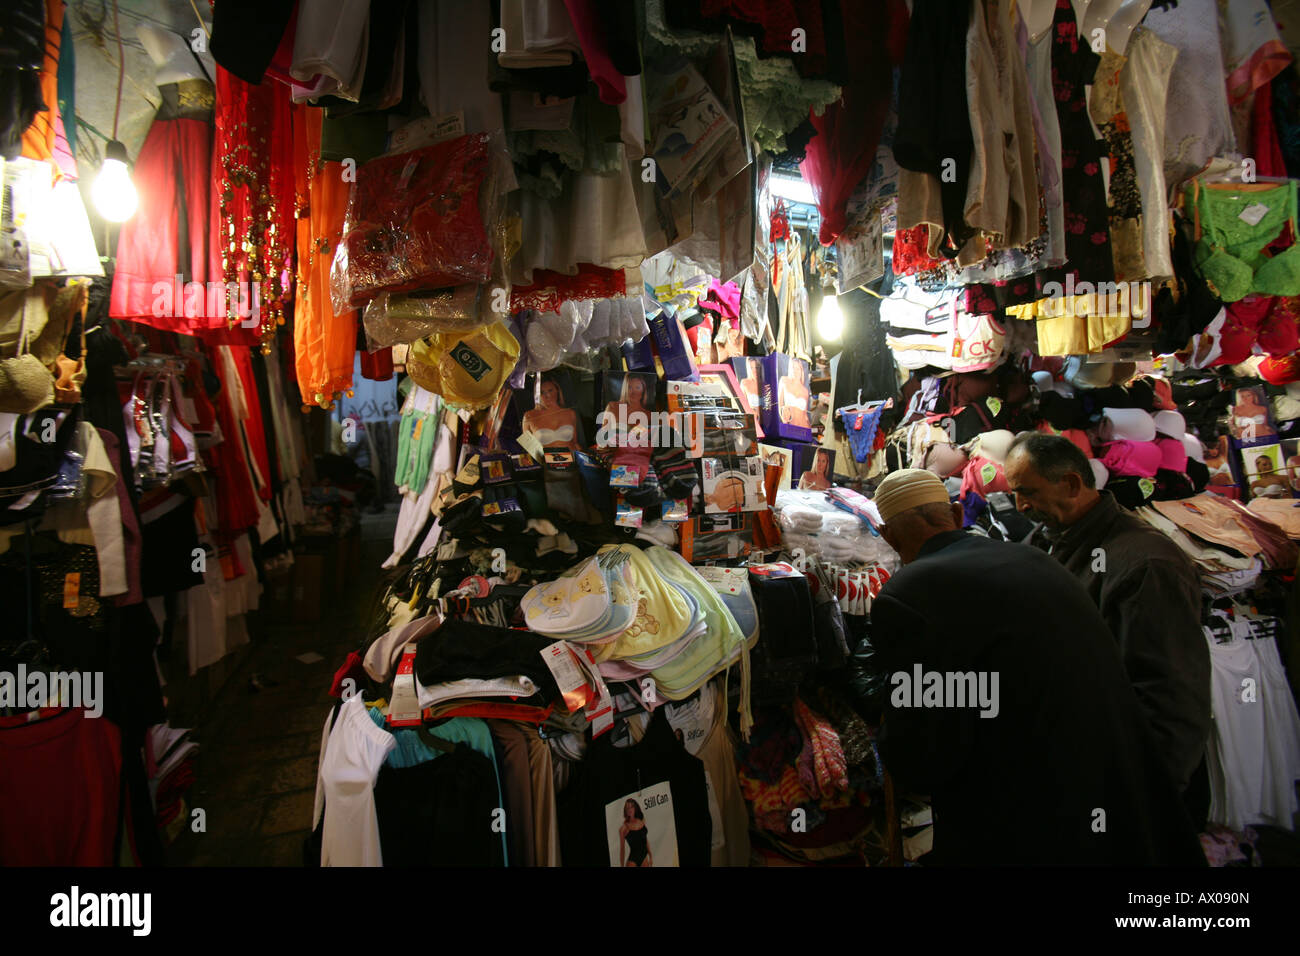 Esaminare gli uomini vestiti in un mercato nella città vecchia sezione di Gerusalemme Foto Stock